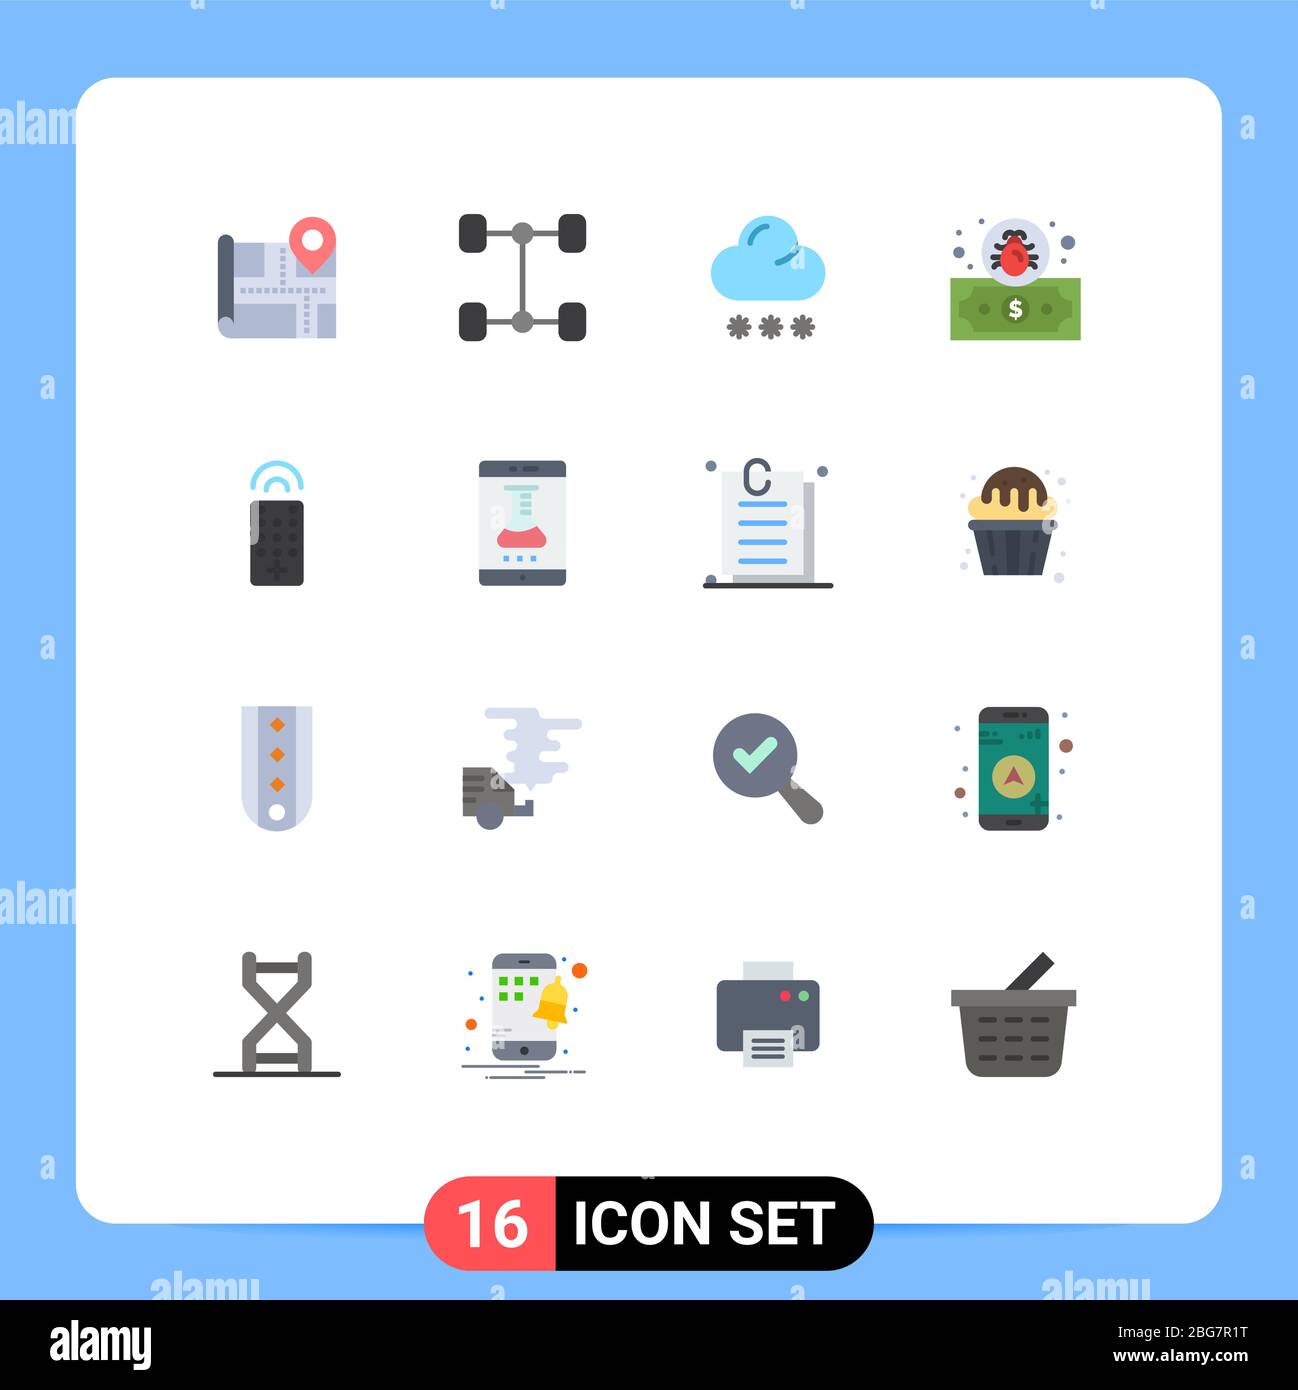 16 icone creative segni moderni e simboli di laboratorio online, app di laboratorio, meteo, tv, controllo pacchetto editabile di elementi Creative Vector Design Illustrazione Vettoriale